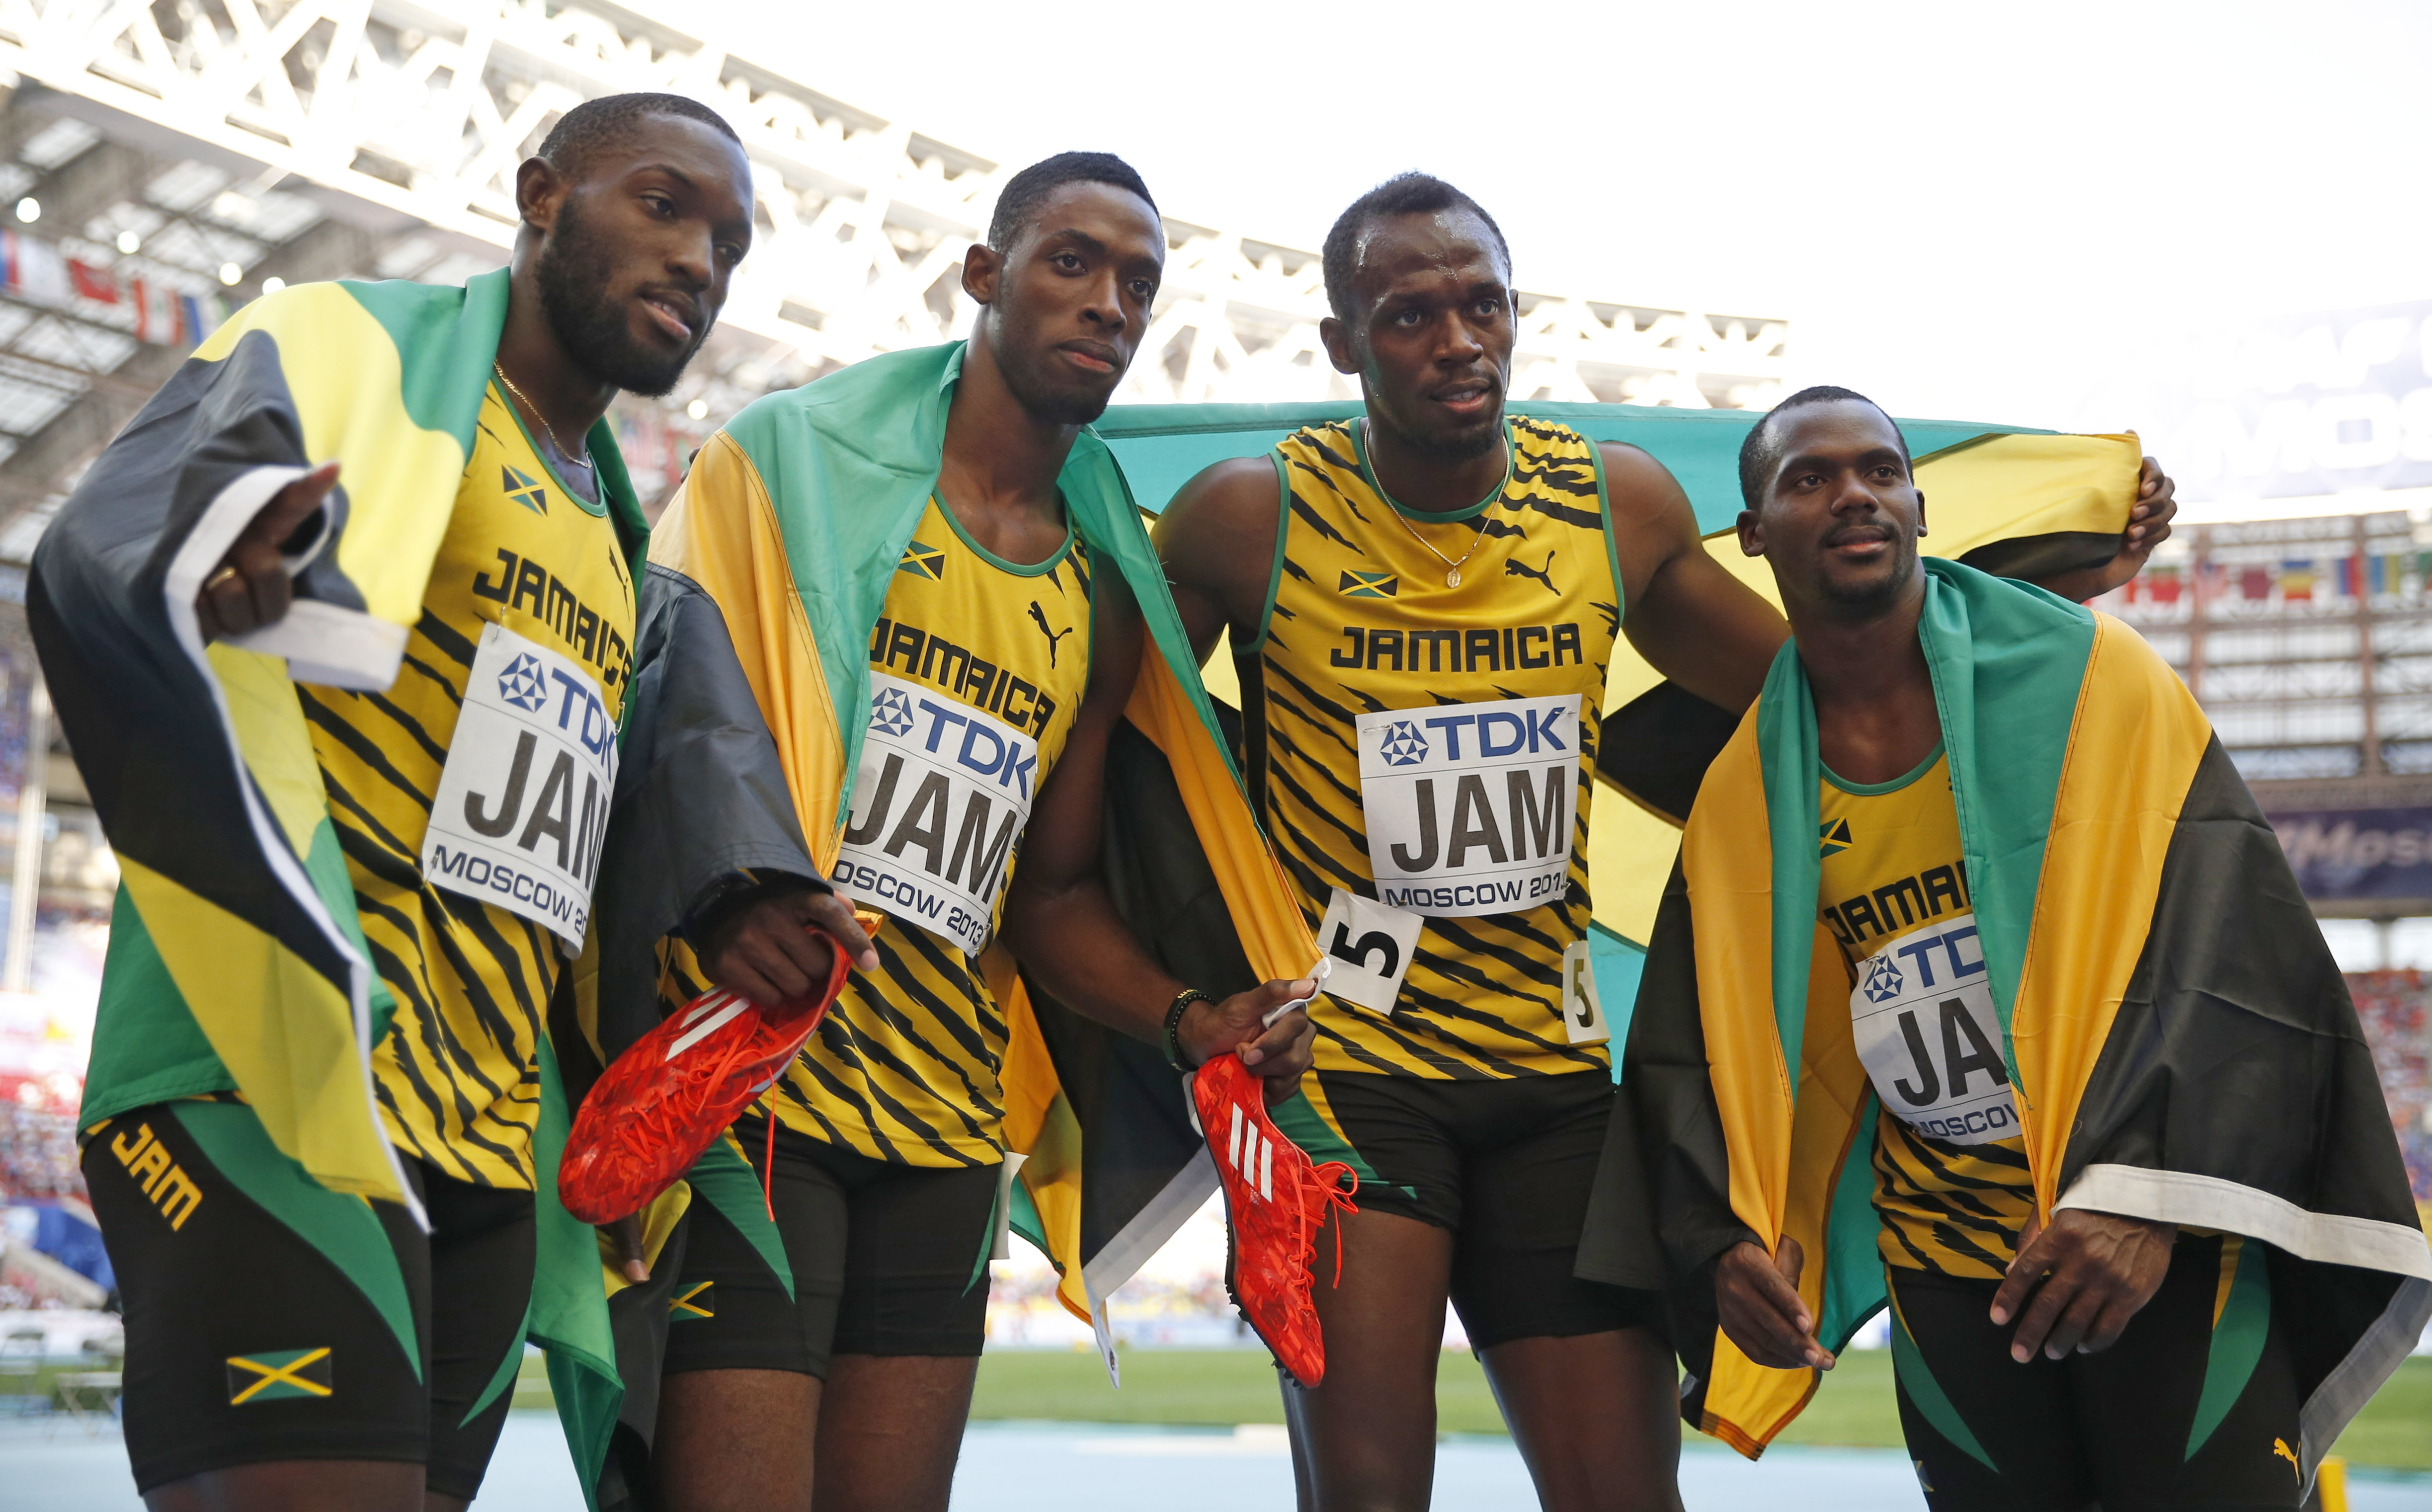 Στίβος: Ανοιχτή «απειλή» της WADA προς την Τζαμάικα για αποκλεισμό